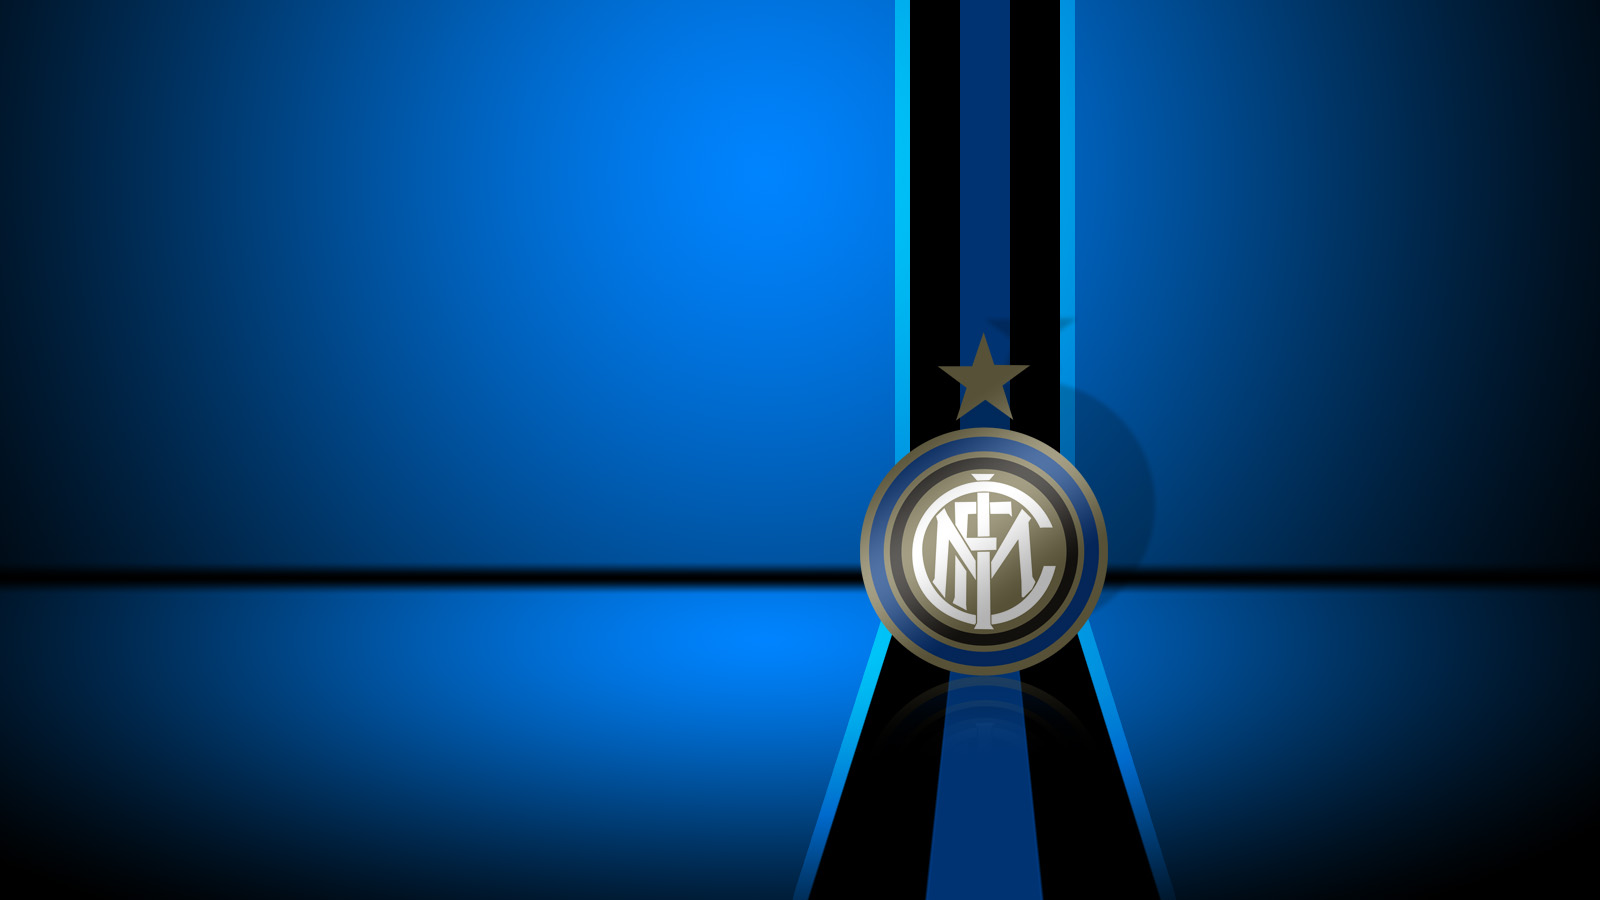 Inter Milan Logo Wallpaper Full Dekstop Pc Pictures In High